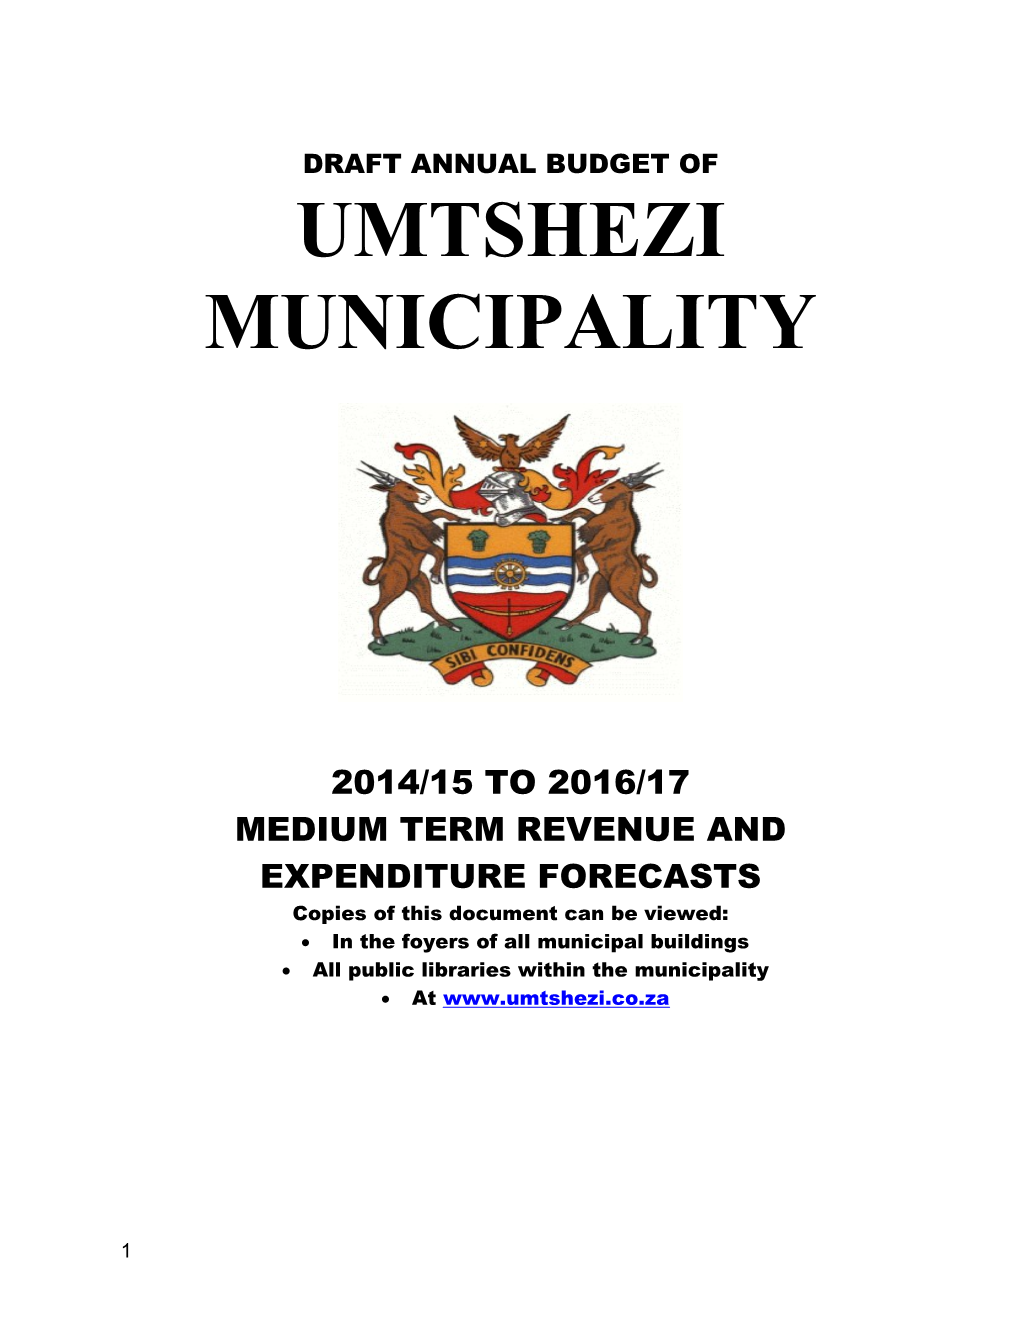 Draftannual Budget of Umtshezi Municipality